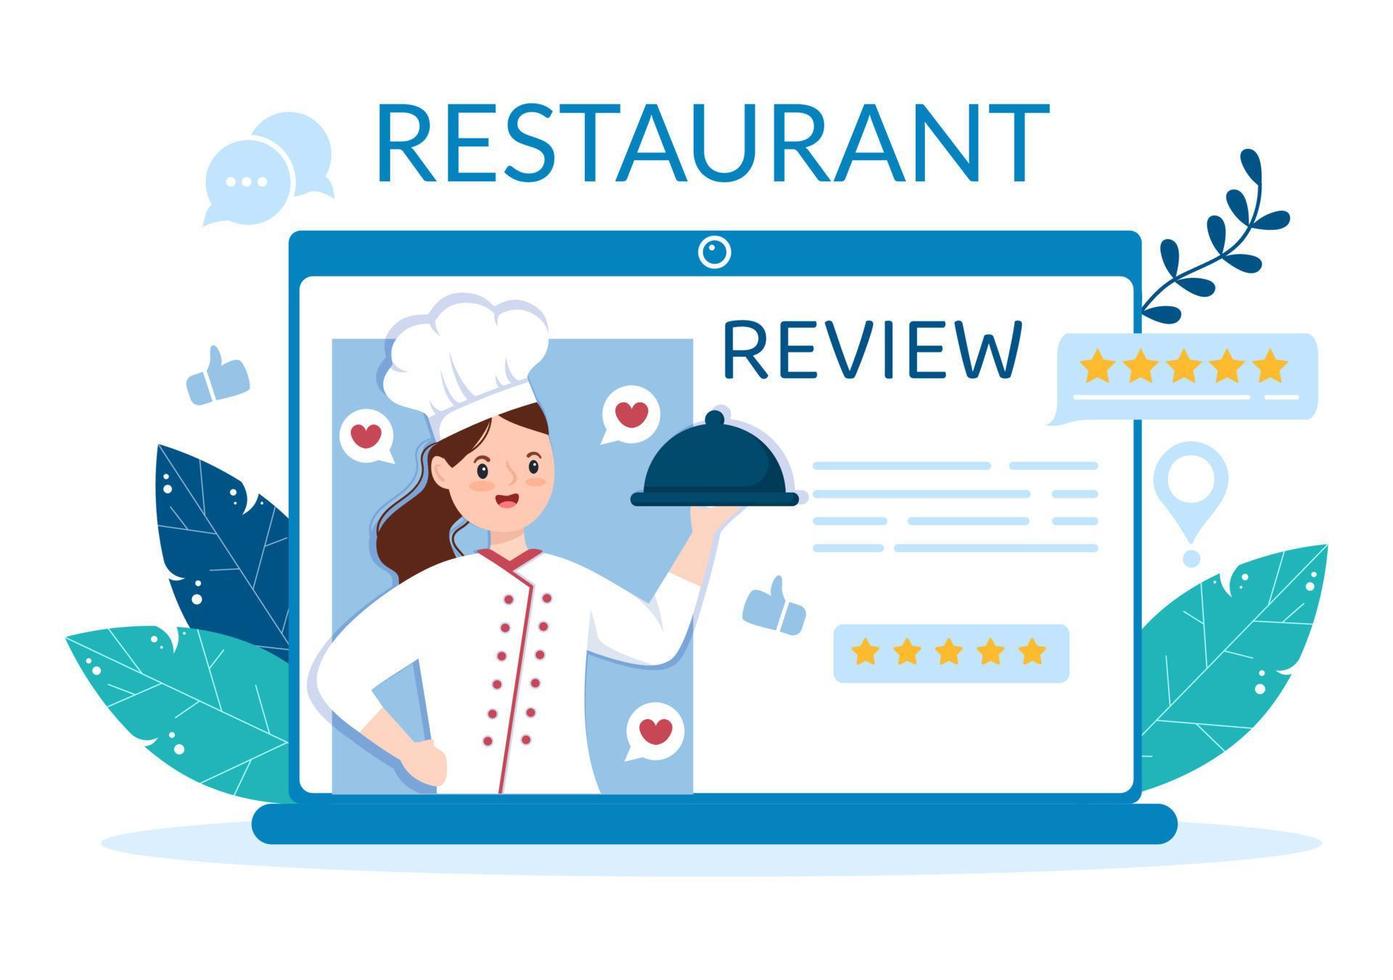 plantilla de revisión de calificación de restaurante ilustración plana de dibujos animados dibujados a mano con comentarios de clientes, estrella de calificación, opinión de expertos y encuesta en línea vector